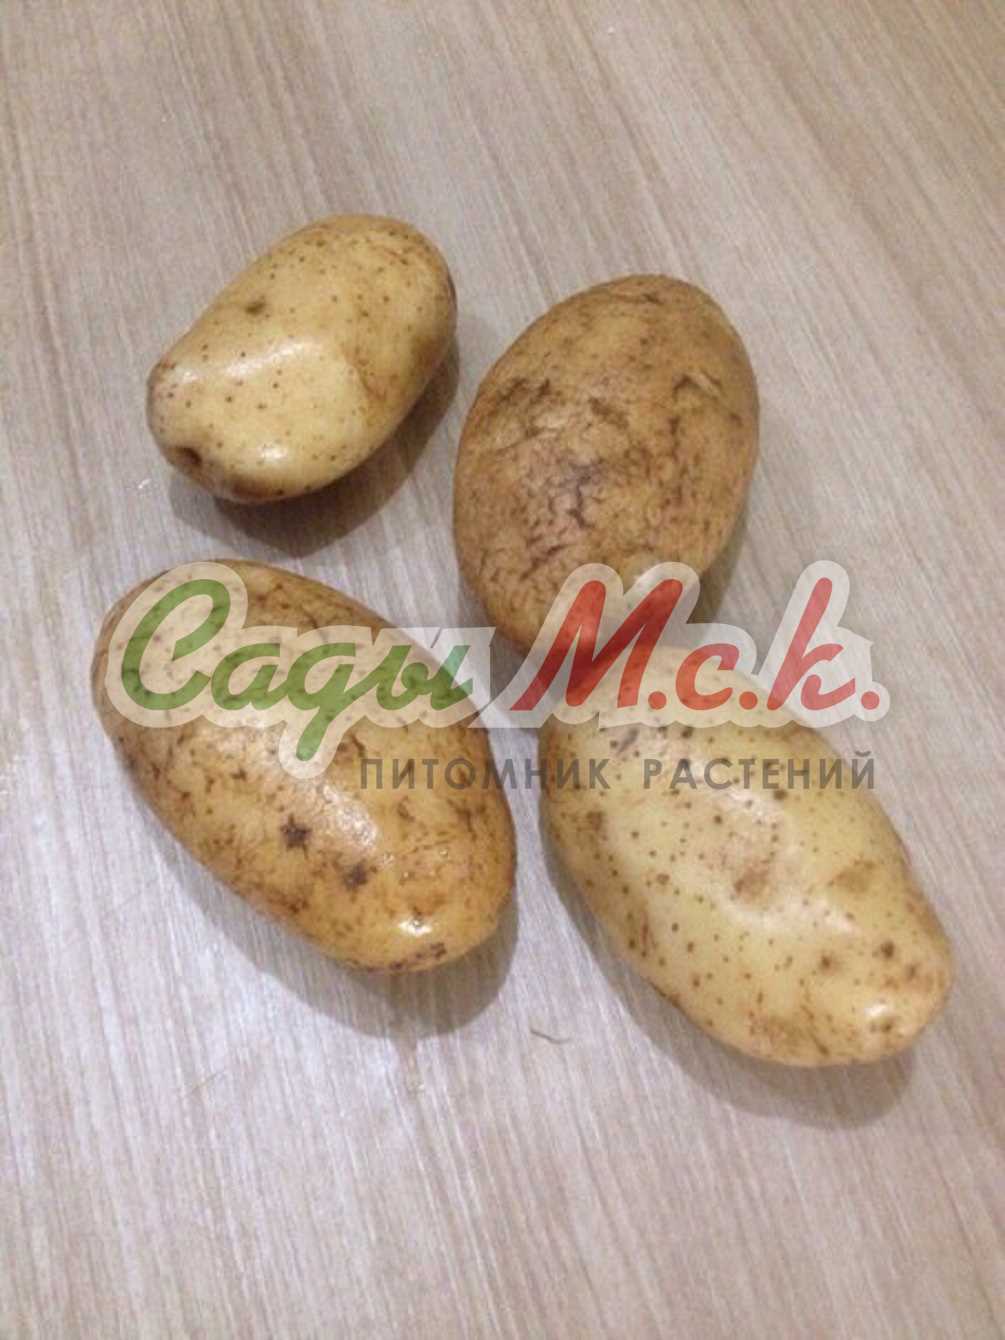 Особенности картофеля Янка